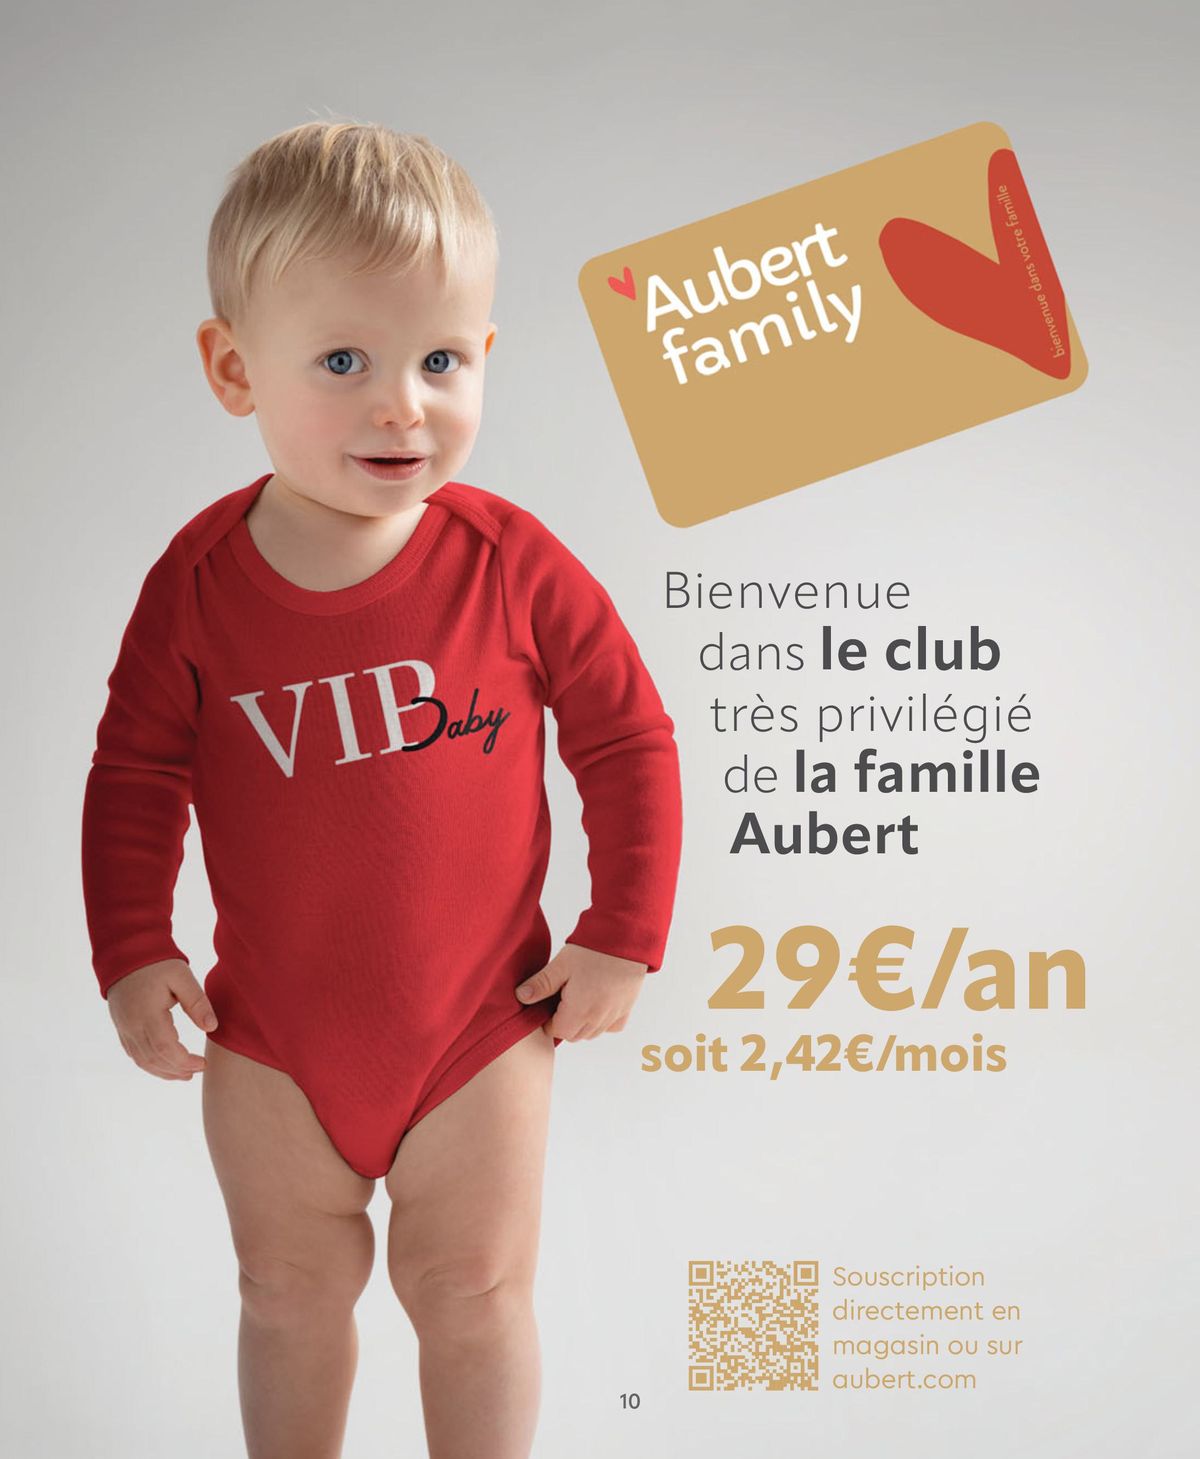 Catalogue Aubert bienvenue dans votre famille, page 00010